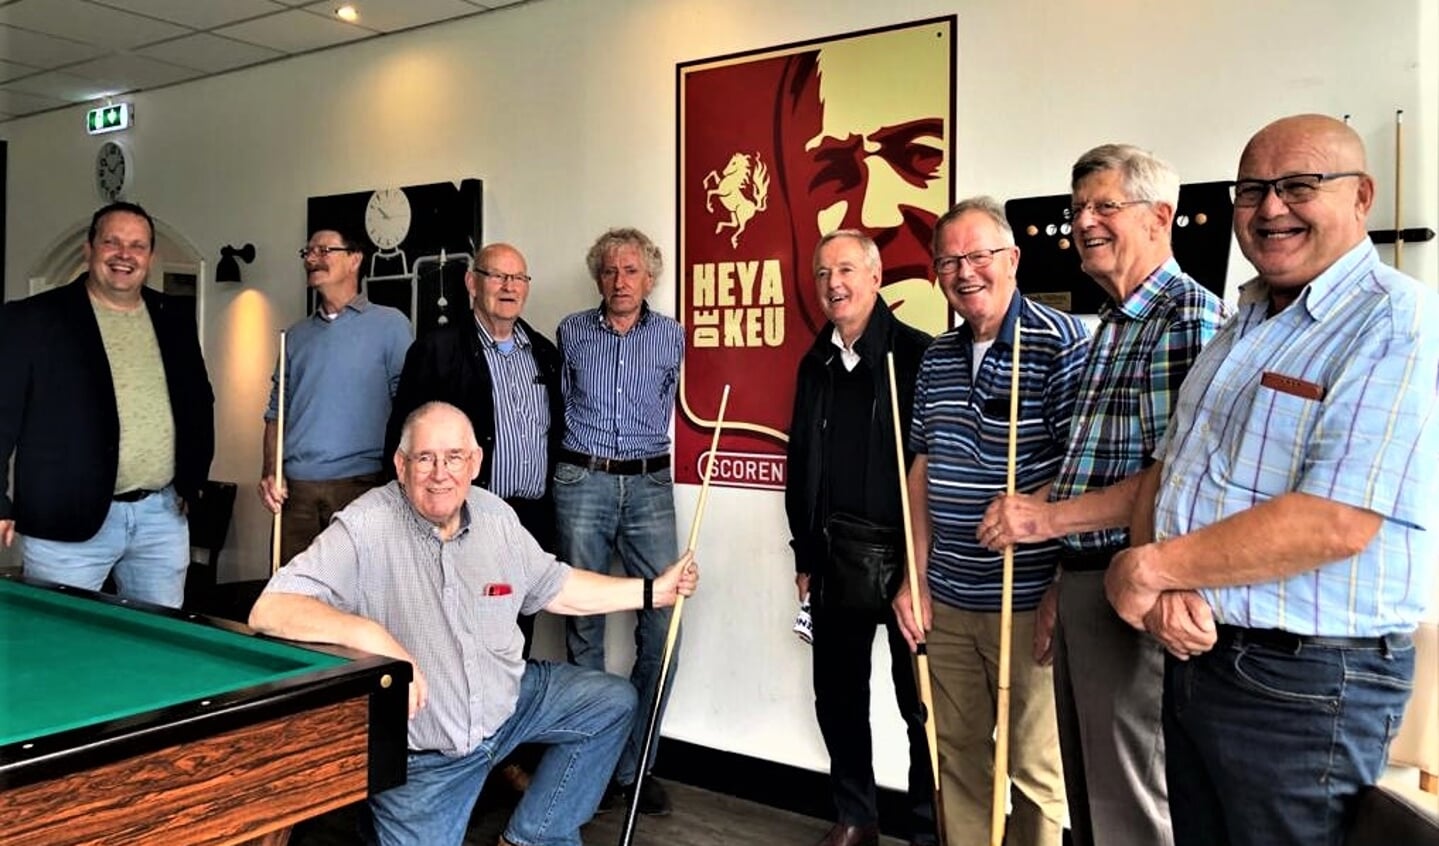 FC Twente lanceerde vorig jaar Heya de Keu!; een biljartproject voor senioren in samenwerking met diverse clubs. Ook Sportclub Enschede doet hier aan mee.